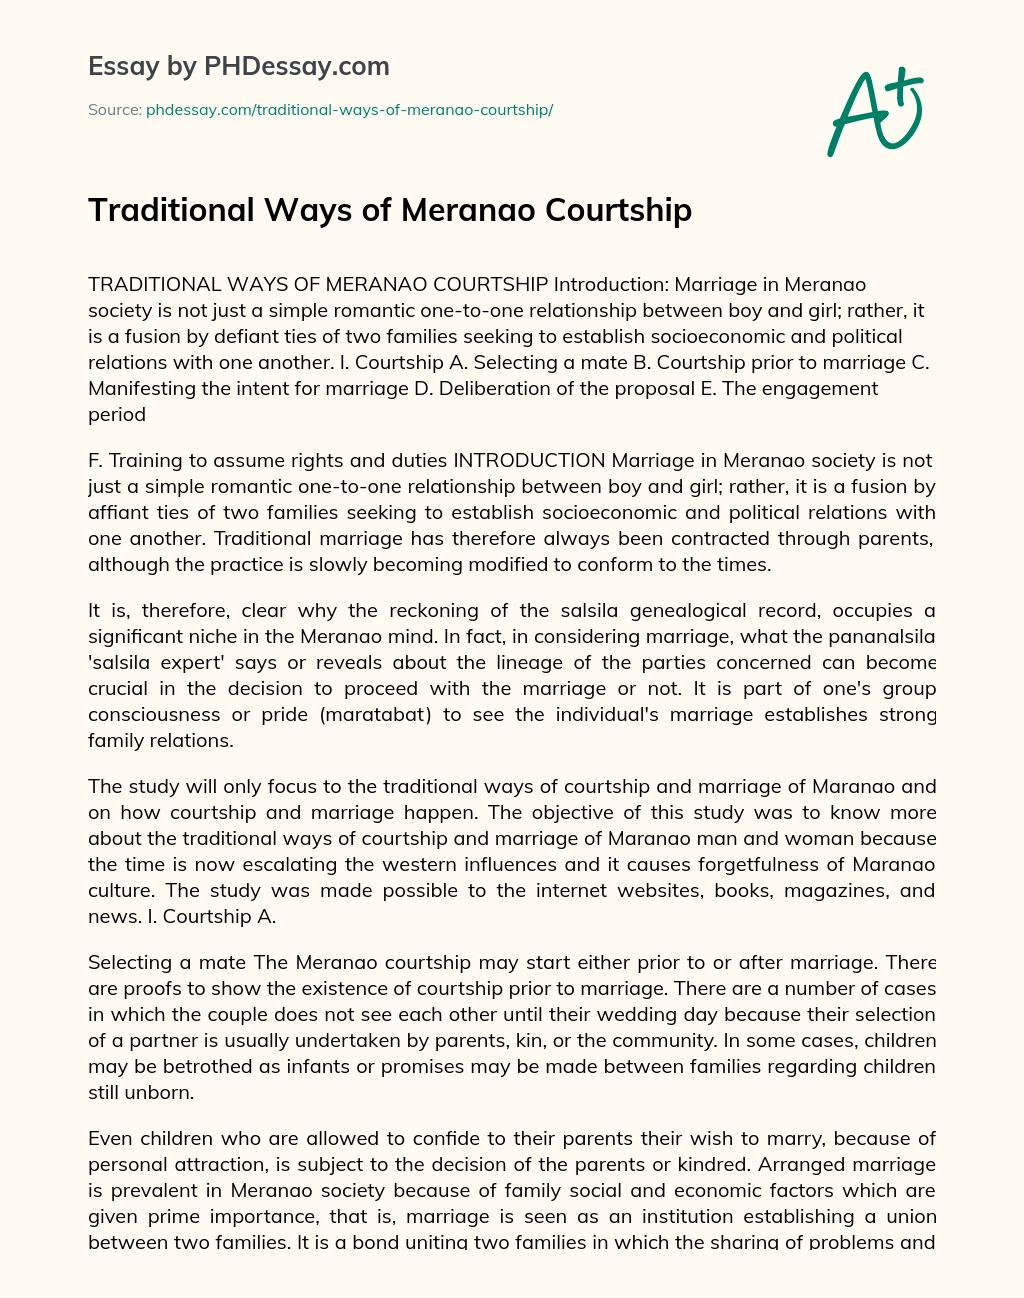 Traditional Ways of Meranao Courtship essay